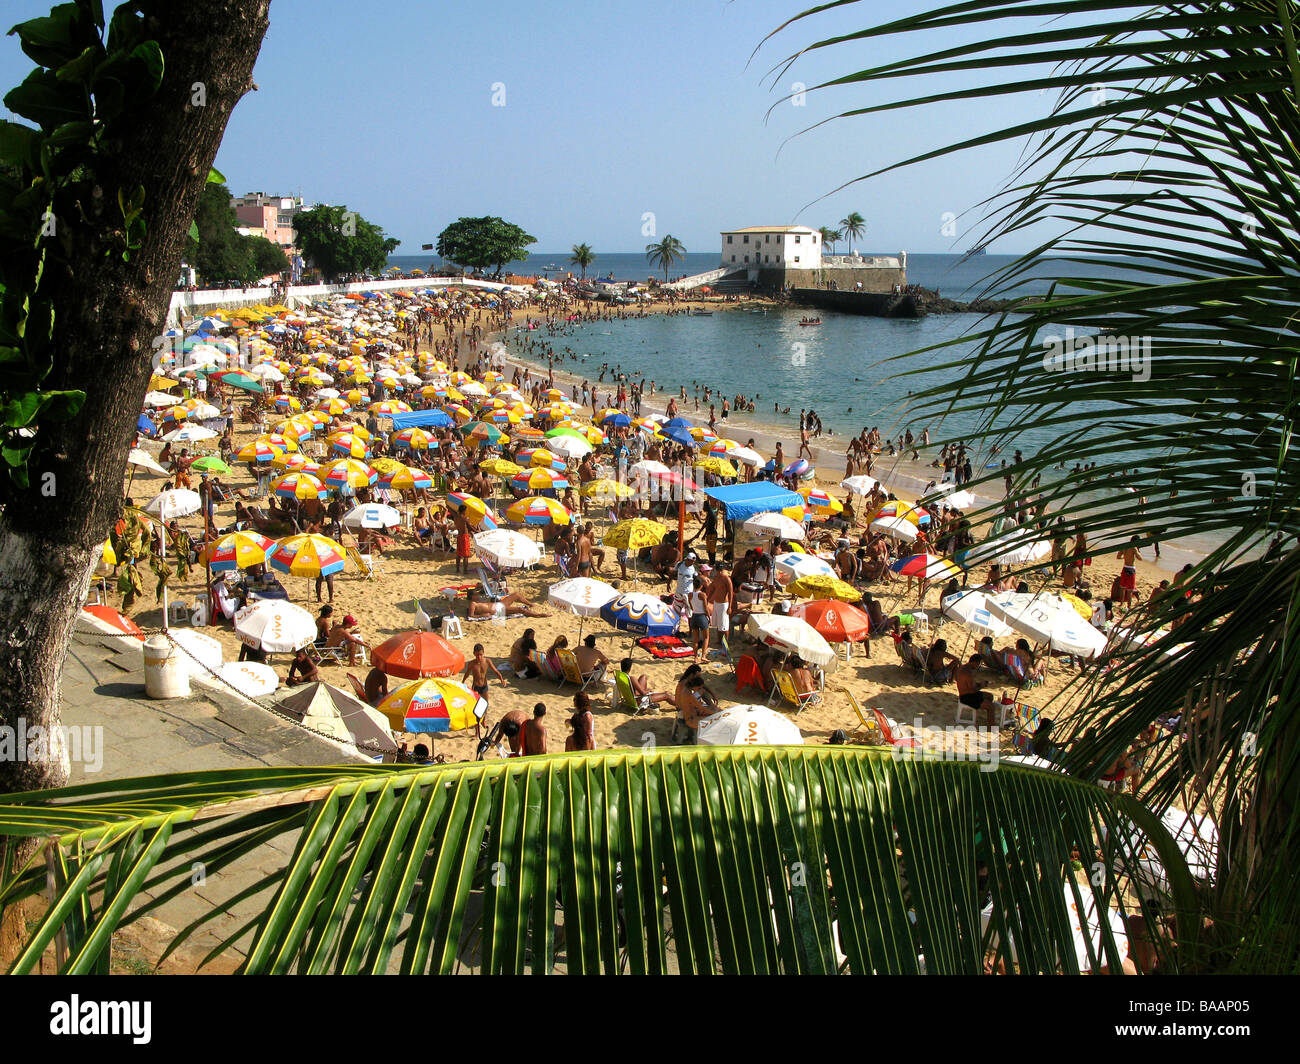 Porto da Barra beach, Salvador de Bahia, Brazil Stock Photo